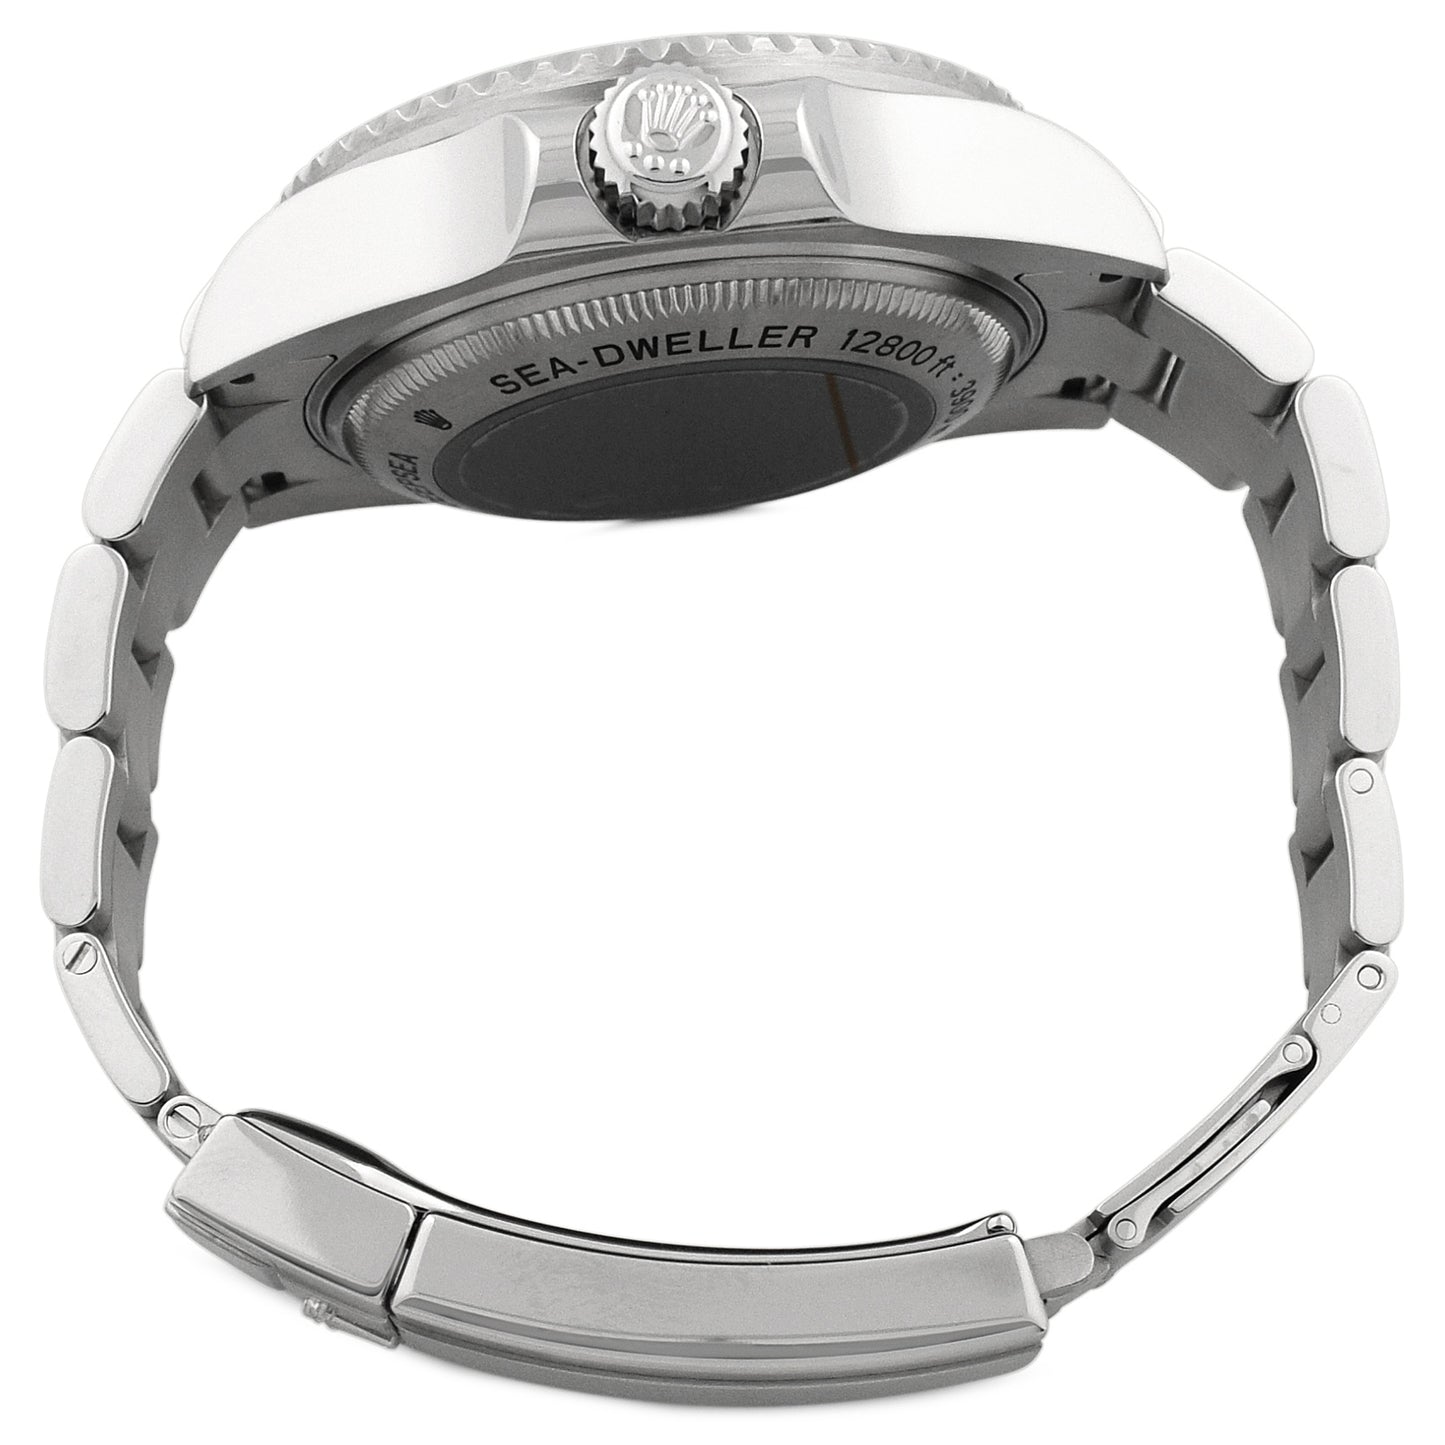 Rolex Deepsea Sea-Dweller Stainless Steel 44mm Black Dot Dial Watch Reference# 116660 - Happy Jewelers Fine Jewelry Lifetime Warranty